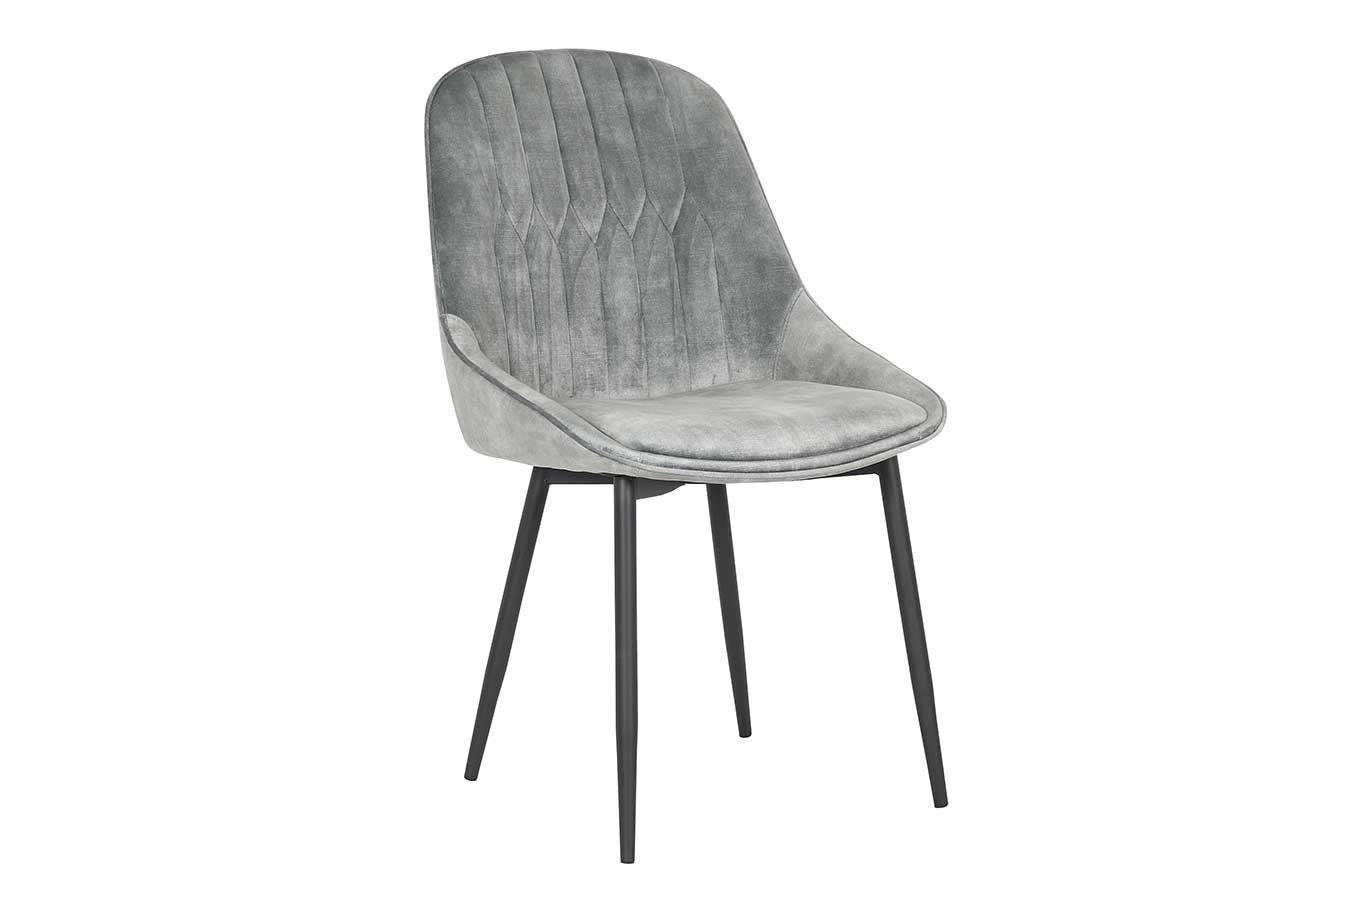 daslagerhaus living Stuhl »Stuhl Jul Samt Vintage grau« online kaufen | OTTO